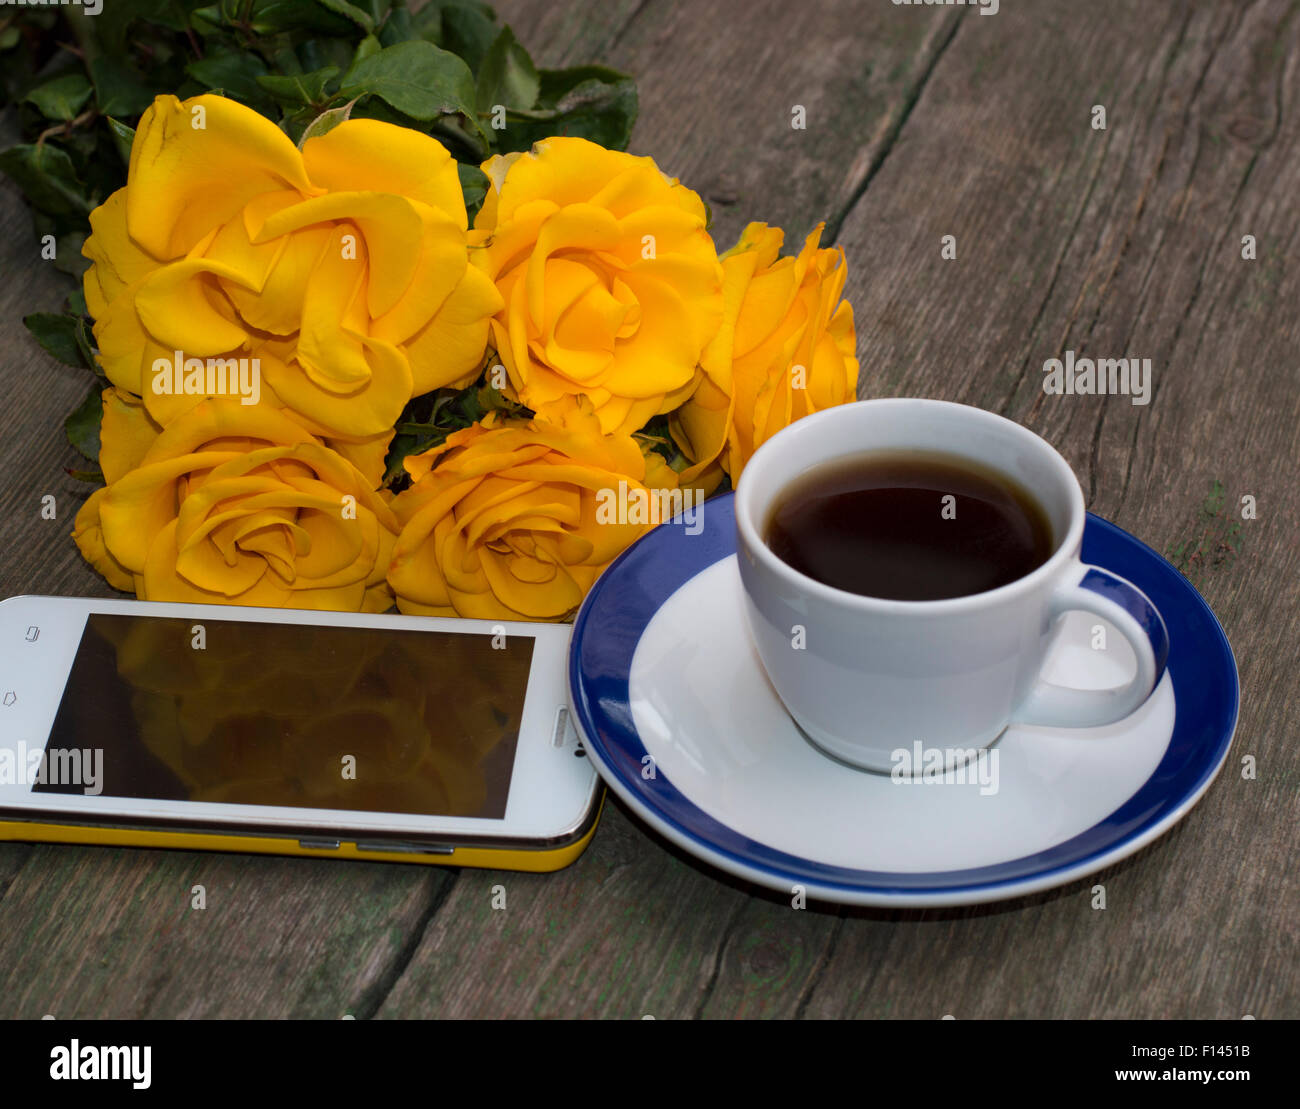 Le café, des roses jaunes et le téléphone mobile sur une table en bois Banque D'Images